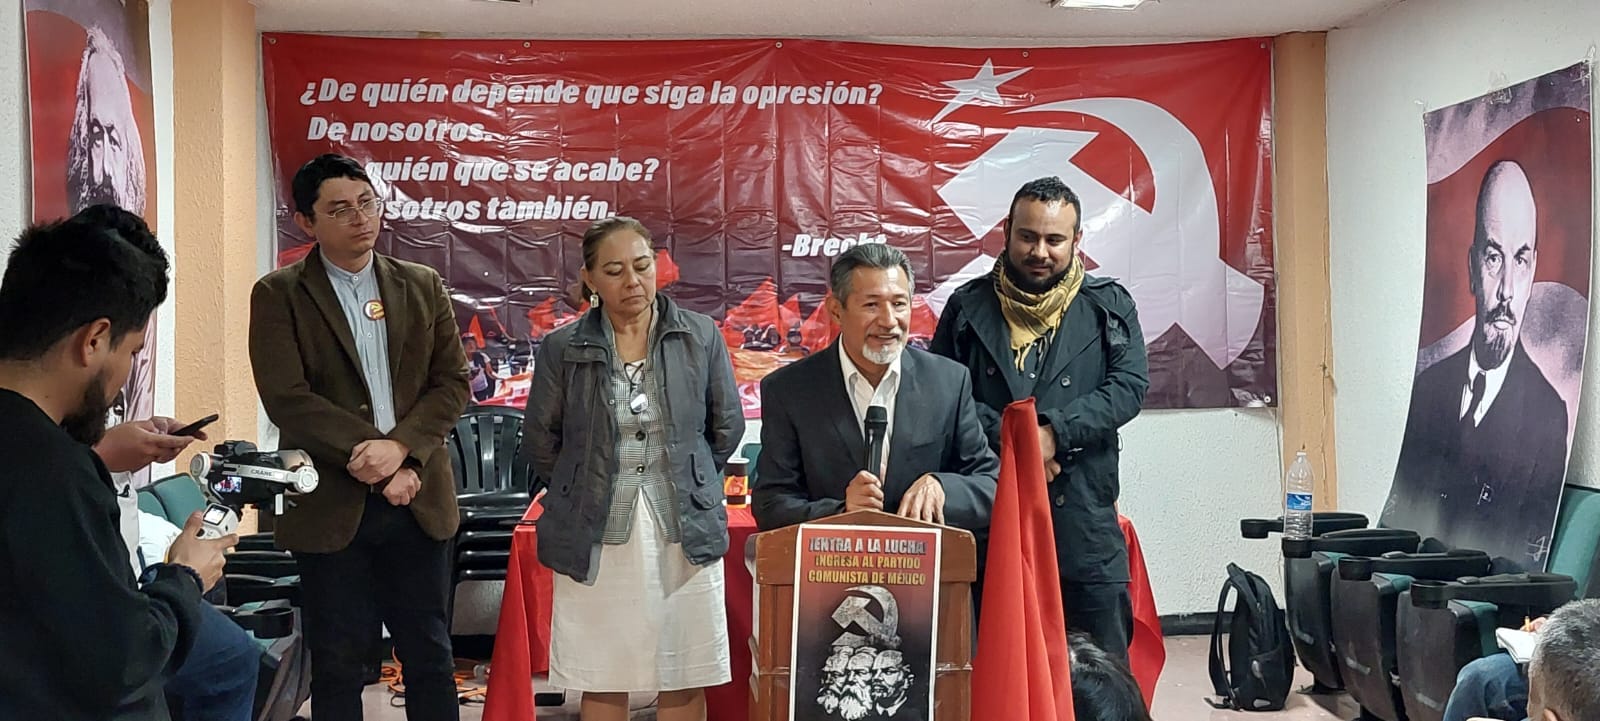 Le communiste Marco Vinicio Dávila Juárez se présente pour les élections présidentielles du Mexique